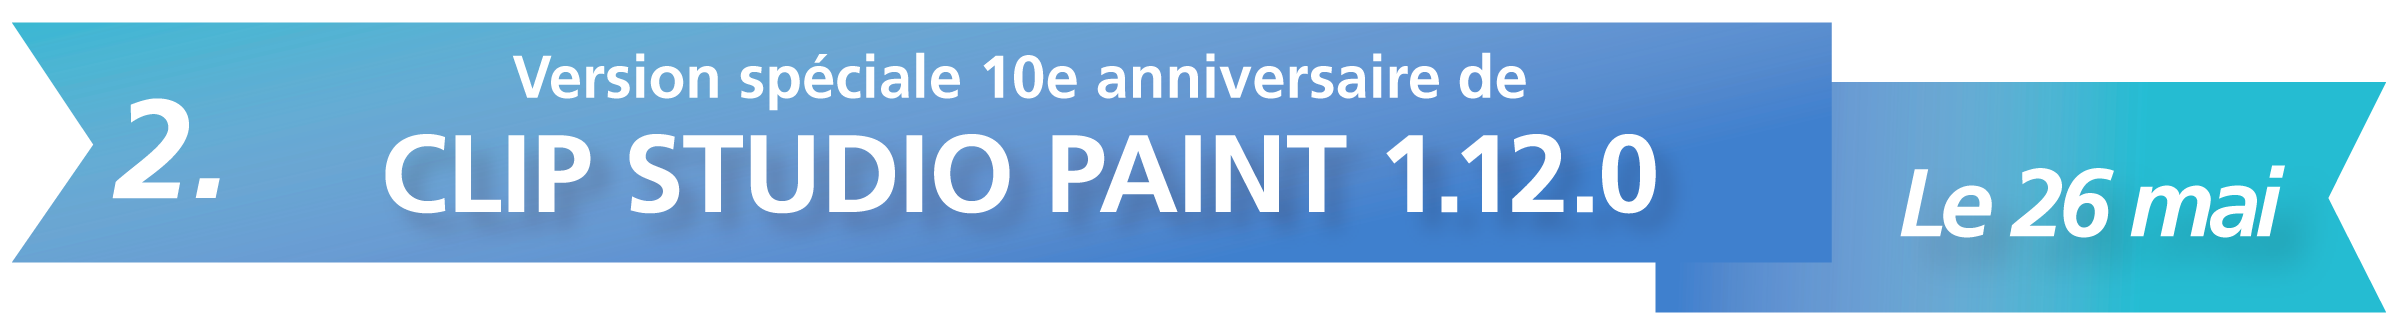 2. Version spéciale 10e anniversaire de CLIP STUDIO PAINT 1.12.0 - Le 26 mai